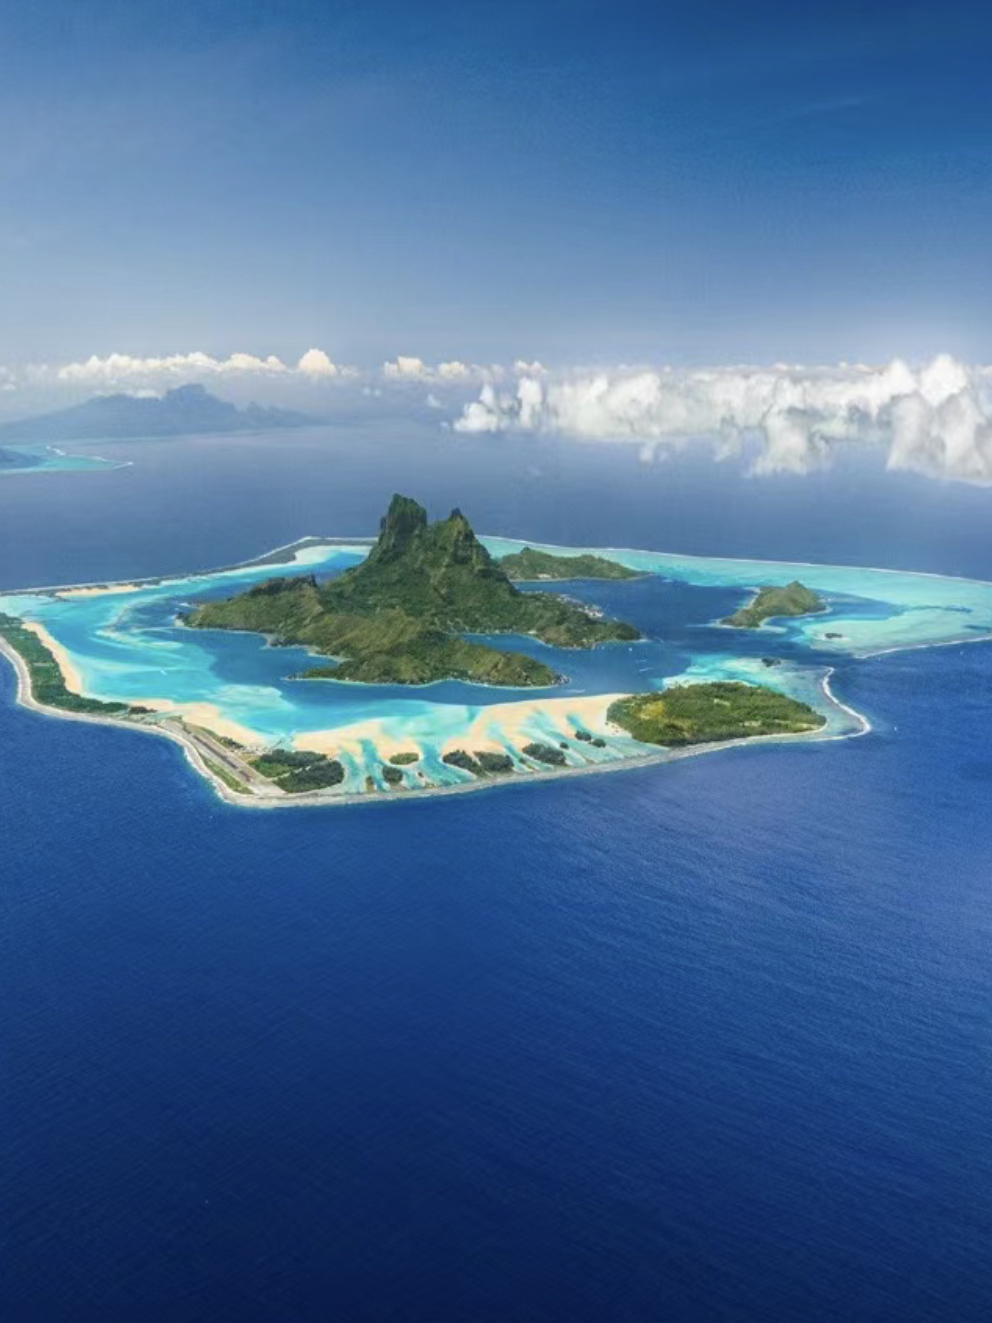 梦幻仙境般的岛屿